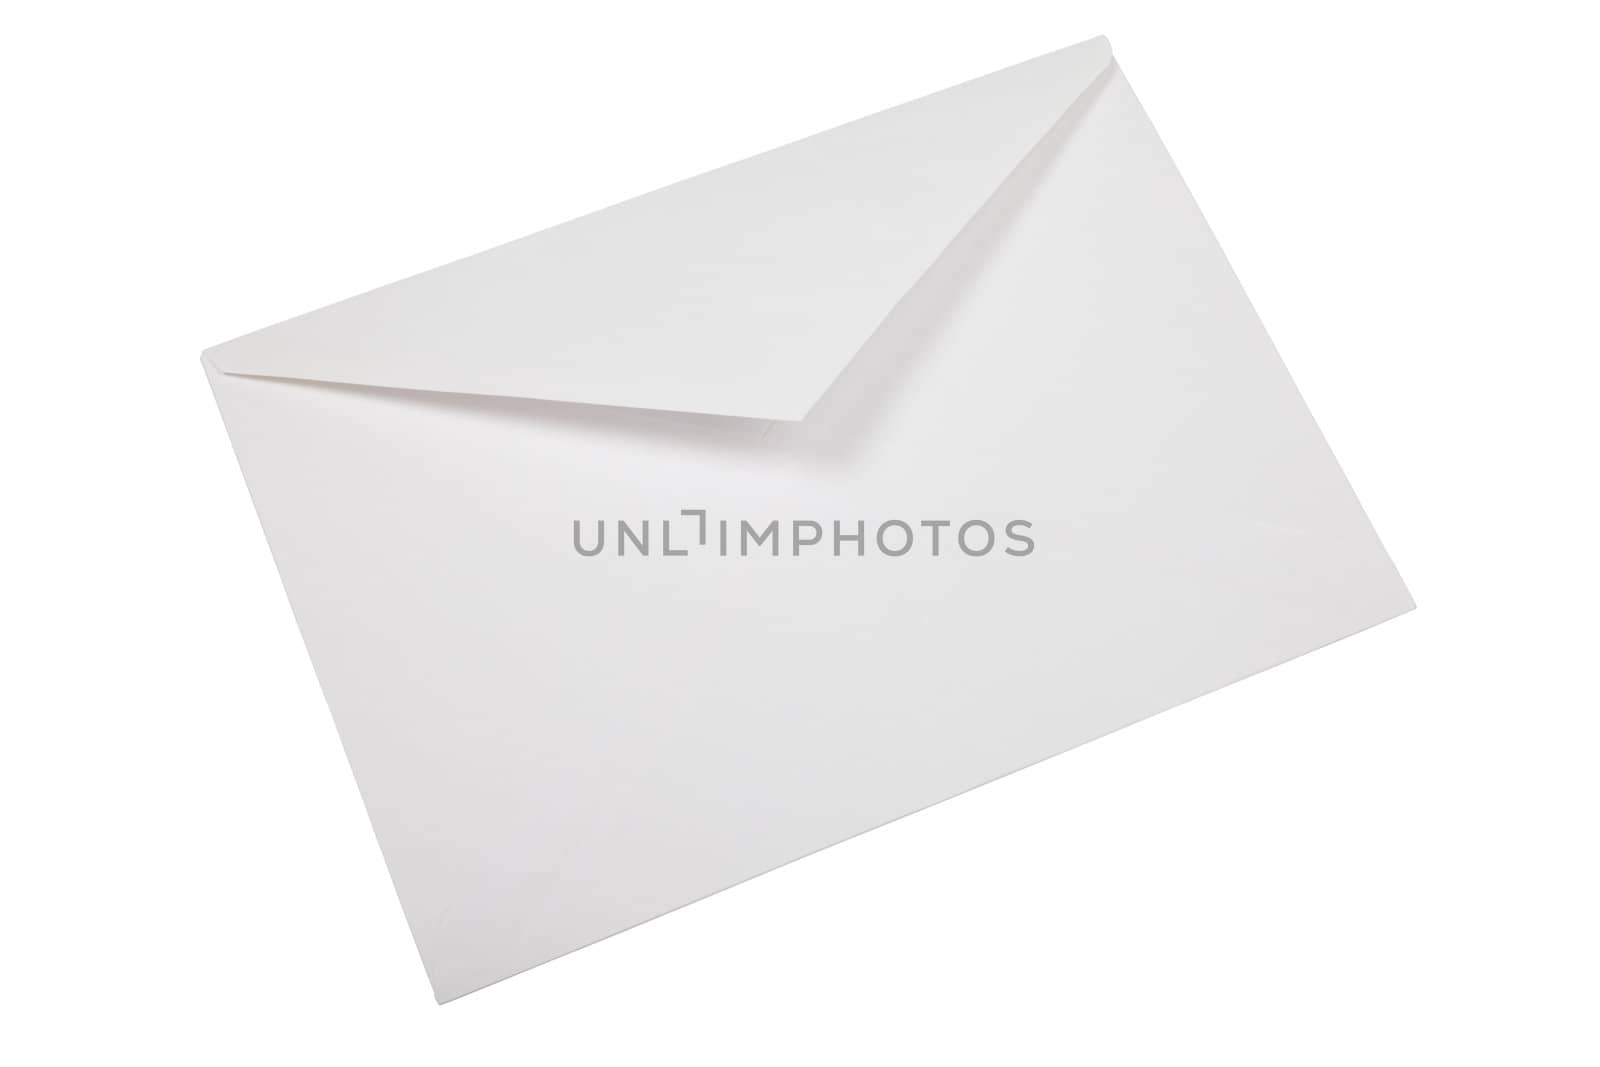 Unused white envelope isolated on white background.